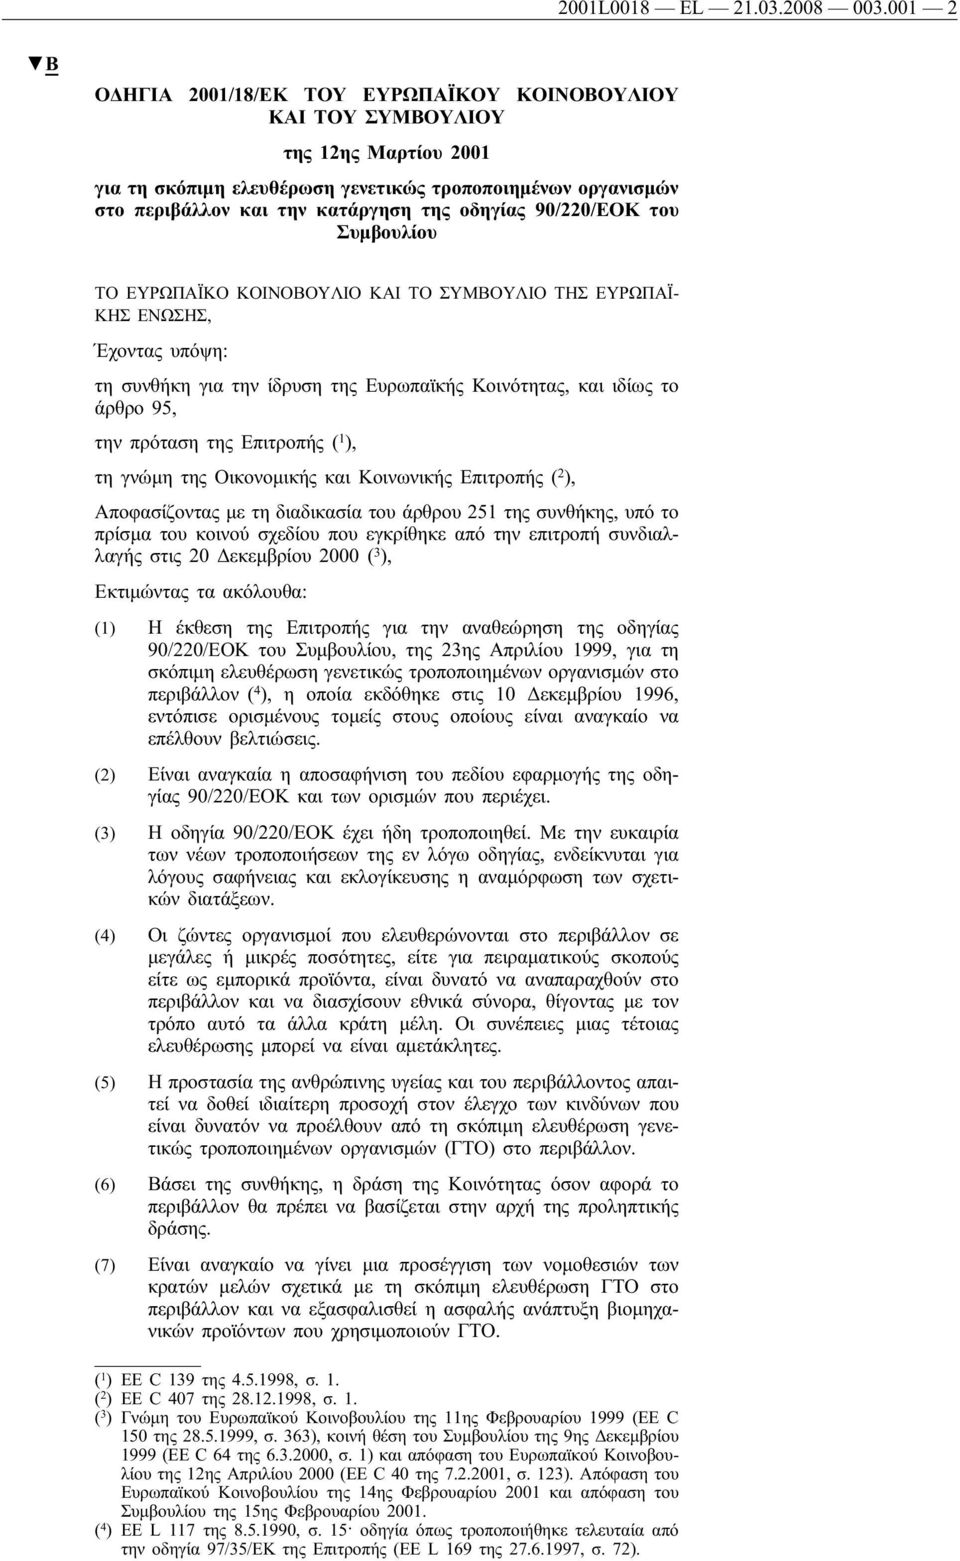 90/220/ΕΟΚ του Συμβουλίου ΤΟ ΕΥΡΩΠΑΪΚΟ ΚΟΙΝΟΒΟΥΛΙΟ ΚΑΙ ΤΟ ΣΥΜΒΟΥΛΙΟ ΤΗΣ ΕΥΡΩΠΑΪ- ΚΗΣ ΕΝΩΣΗΣ, Έχοντας υπόψη: τη συνθήκη για την ίδρυση της Ευρωπαϊκής Κοινότητας, και ιδίως το άρθρο 95, την πρόταση της